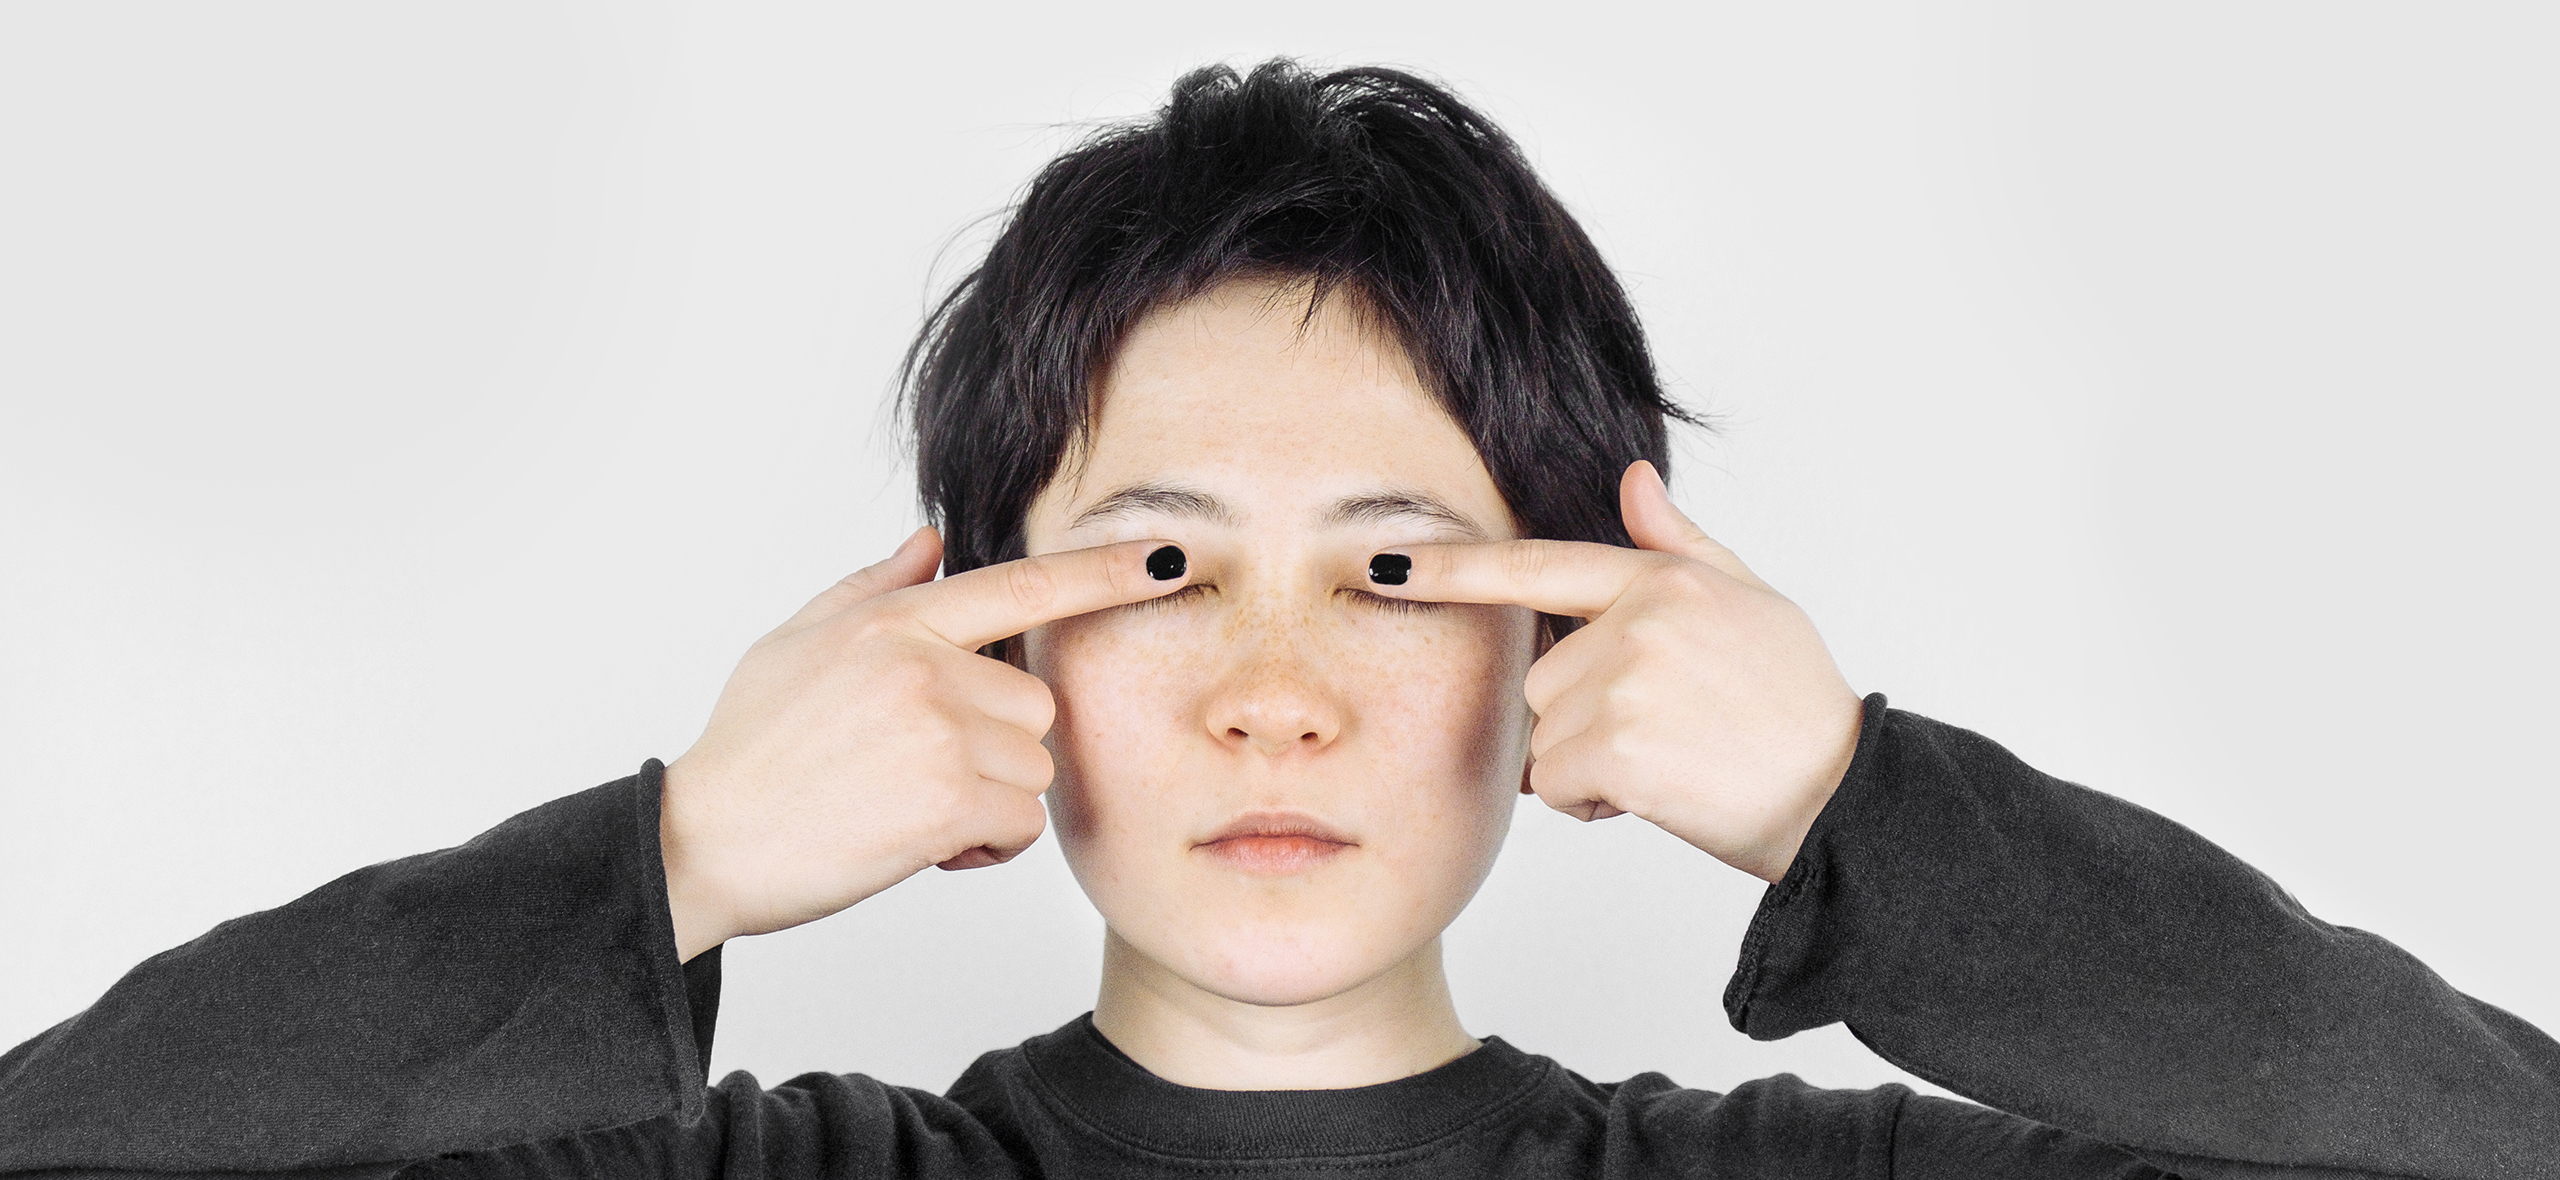 Офтальмология за границей: эффективное восстановление зрения